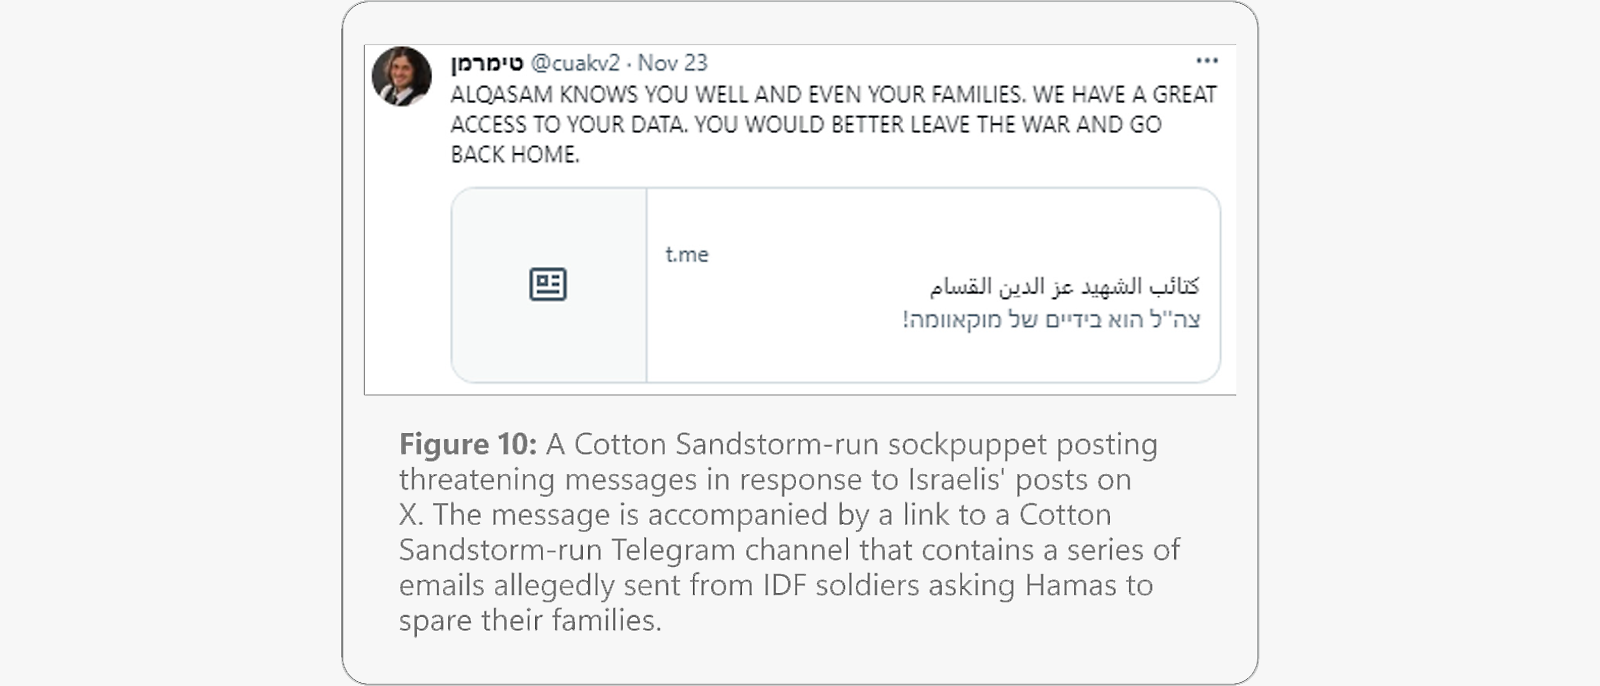 Grasinanti žinutė nuo tariamos „Cotton Sandstorm“ valdomos marionetės, kurioje užsimenama apie prieigą prie asmeninių duomenų ir raginama pasitraukti iš karo.